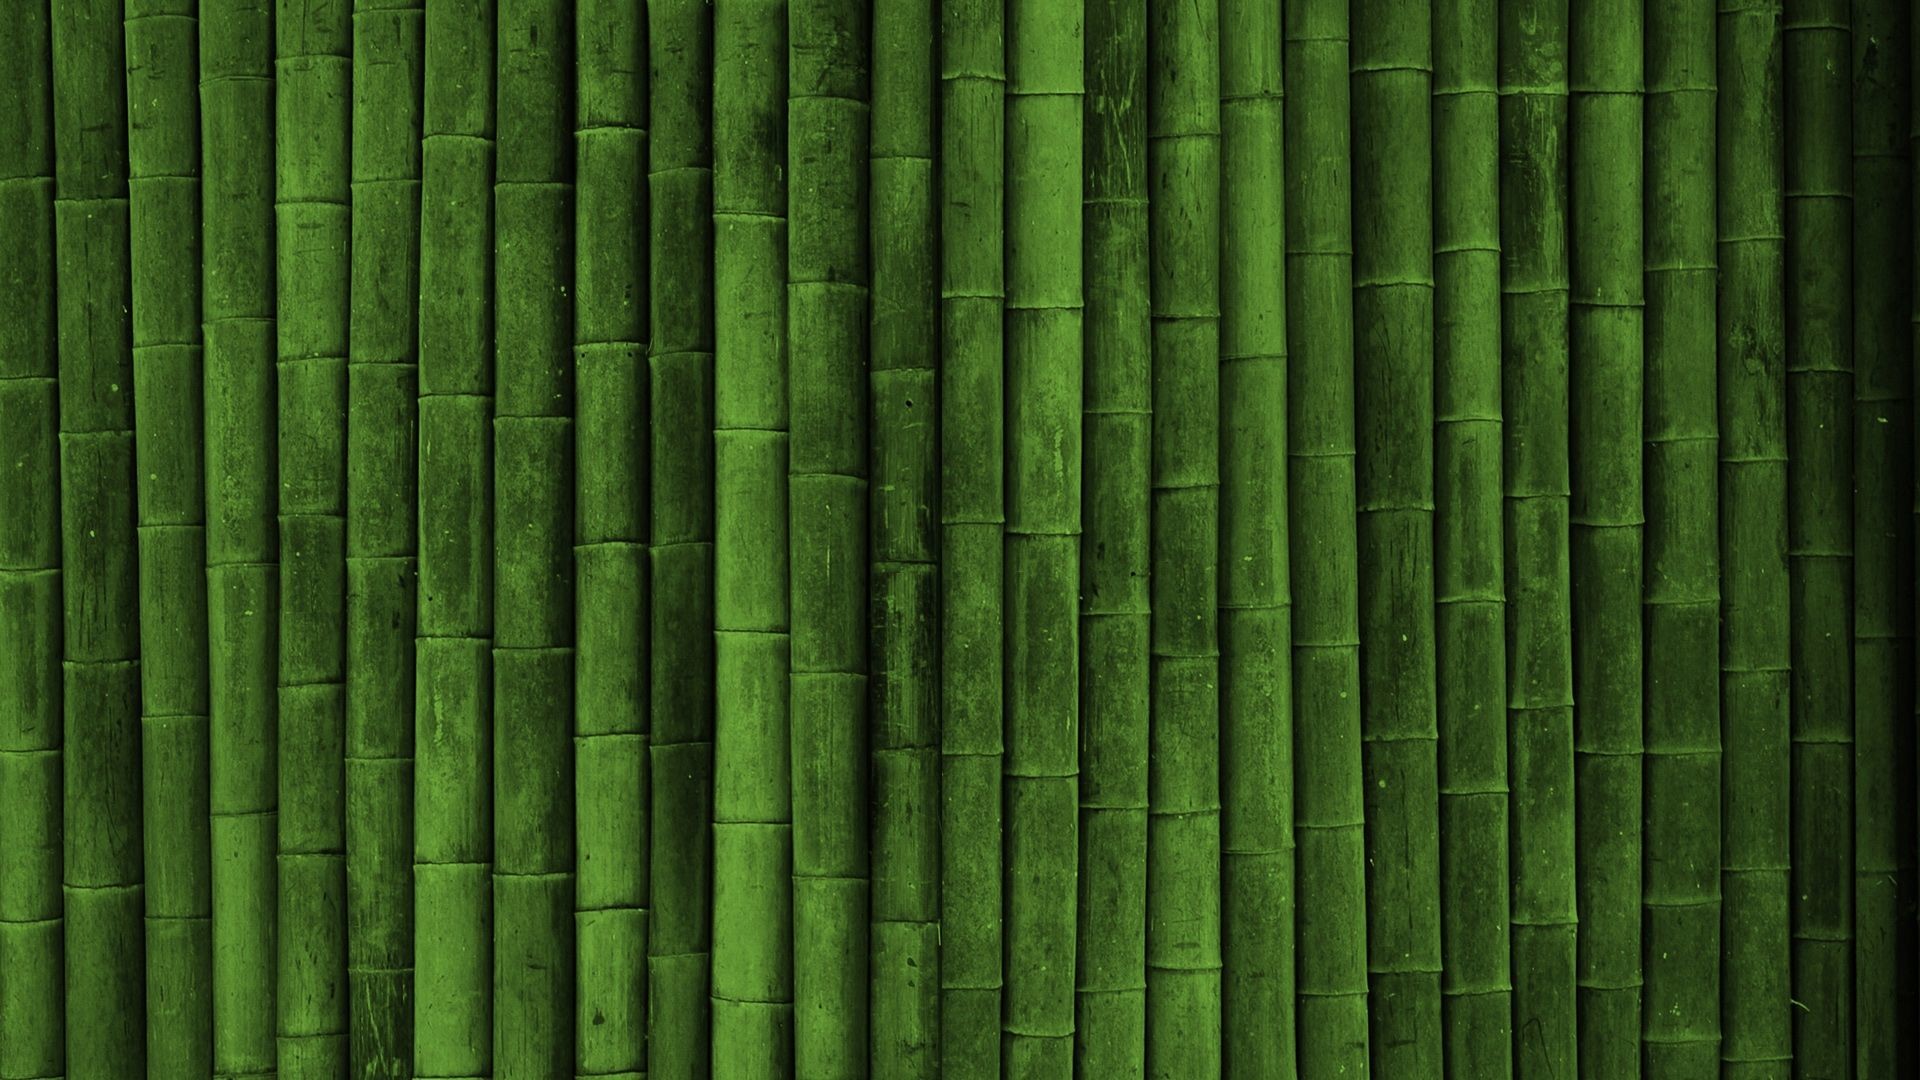 1920x1080 Bamboo Wall HD desktop wallpaper High Definition Fullscreen | HD Wallpapers  | Pinterest | Bamboo wallpaper, Hd wallpaper and Wallpaper